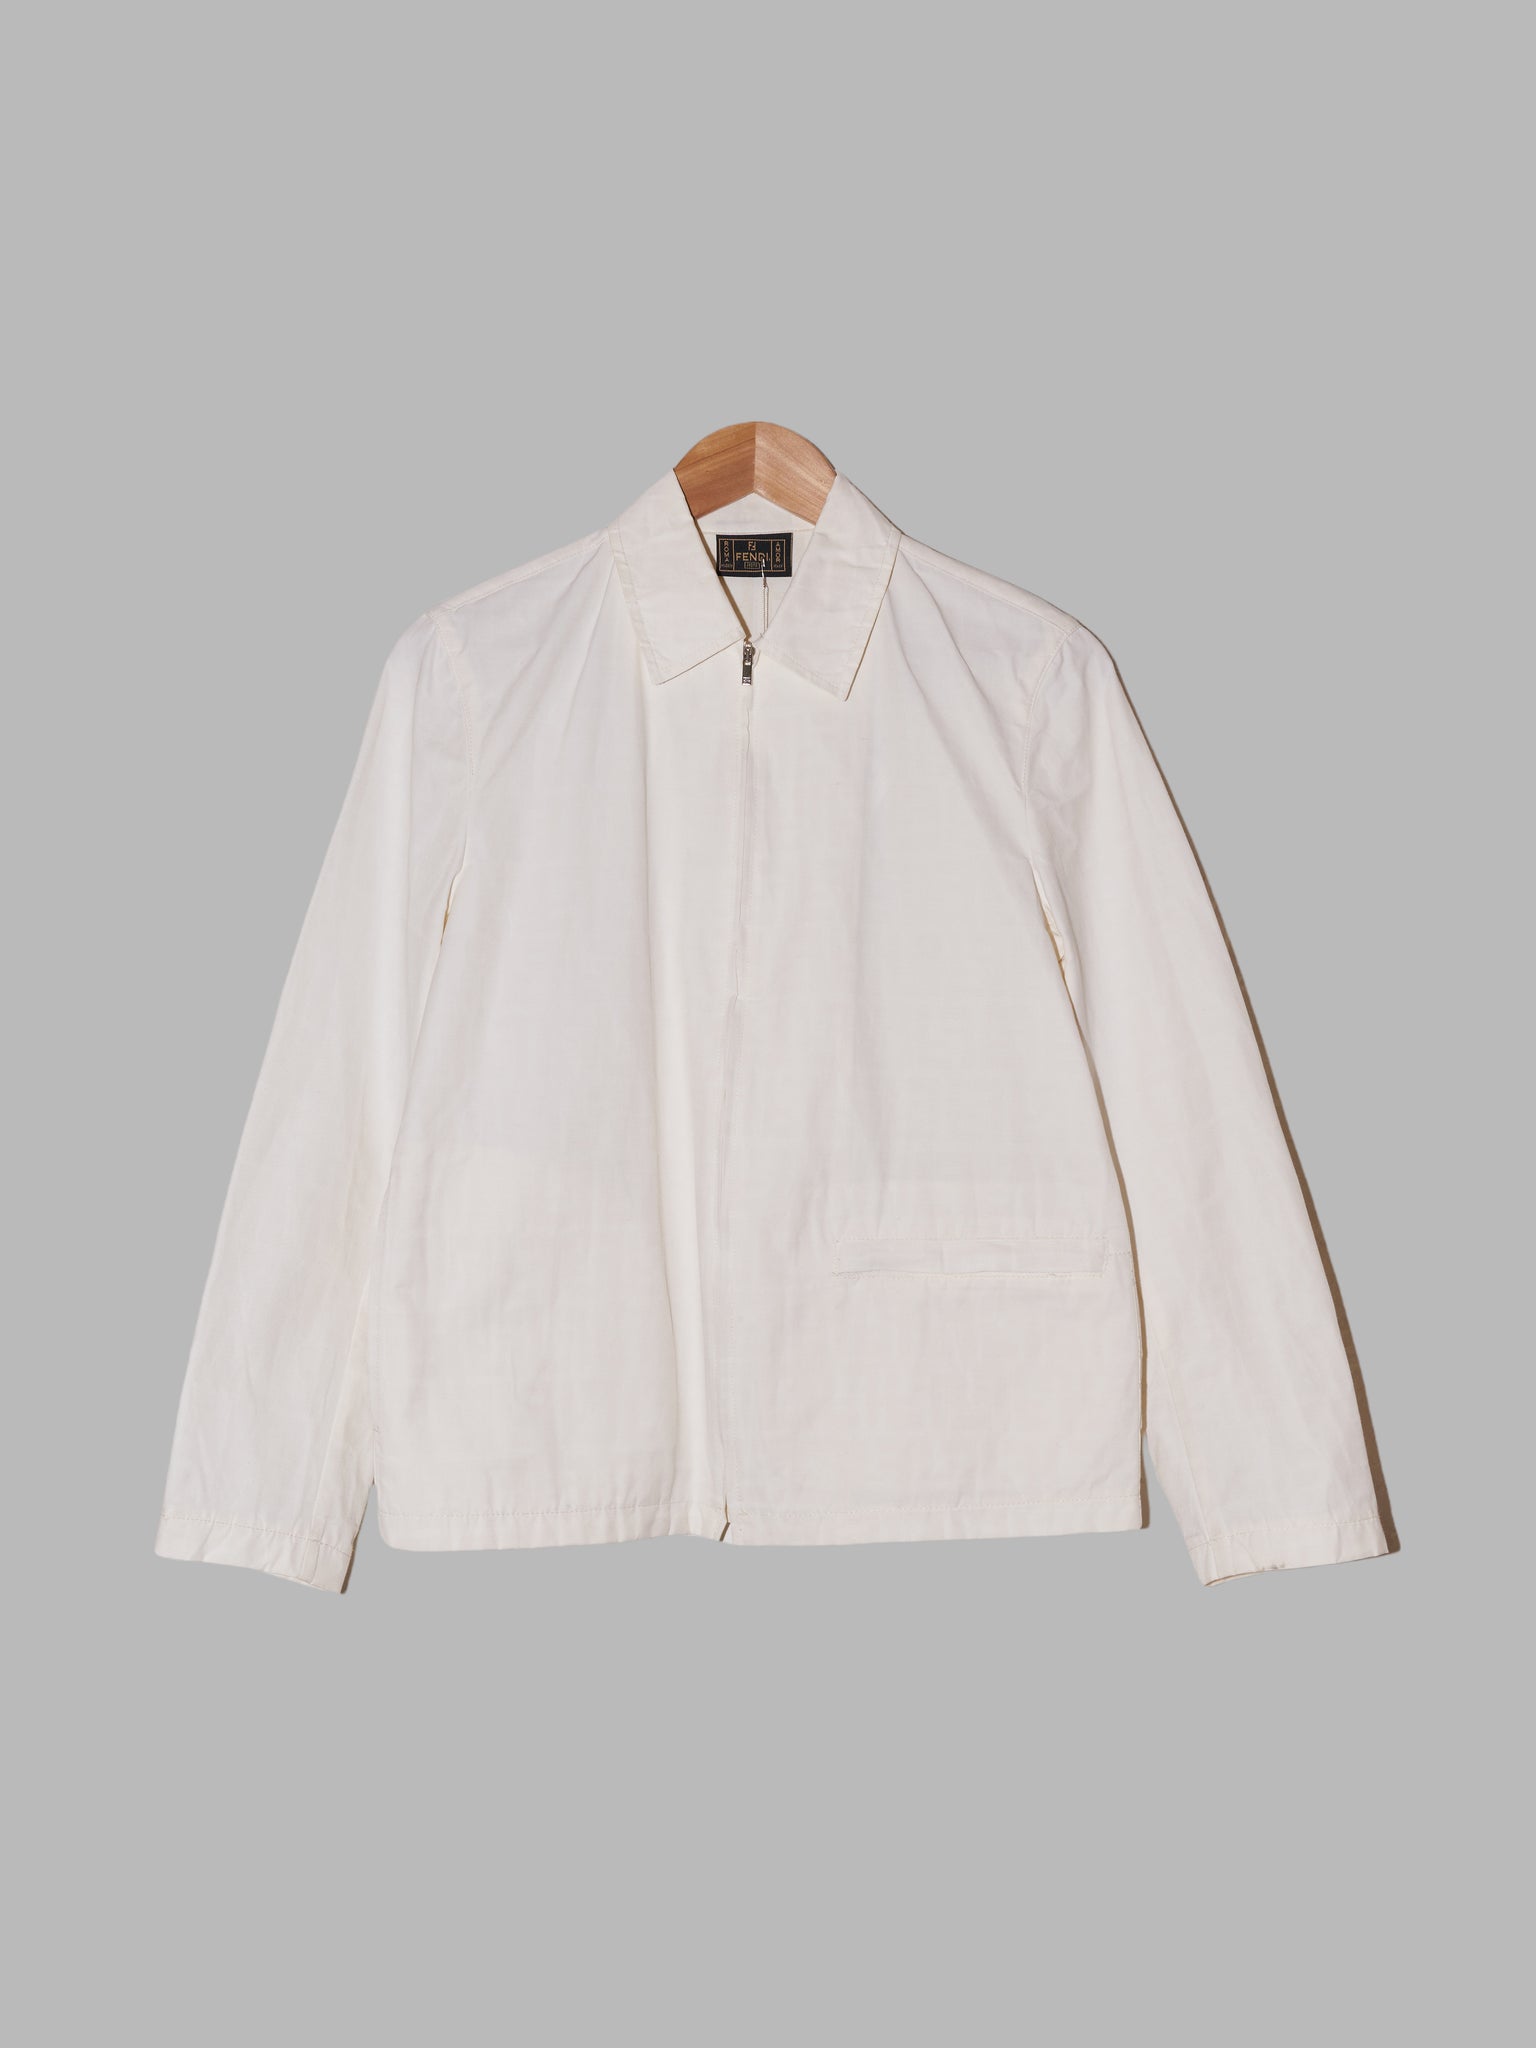 Fendi Jeans 1990s white cotton-nylon zip jacket with logo print on inside